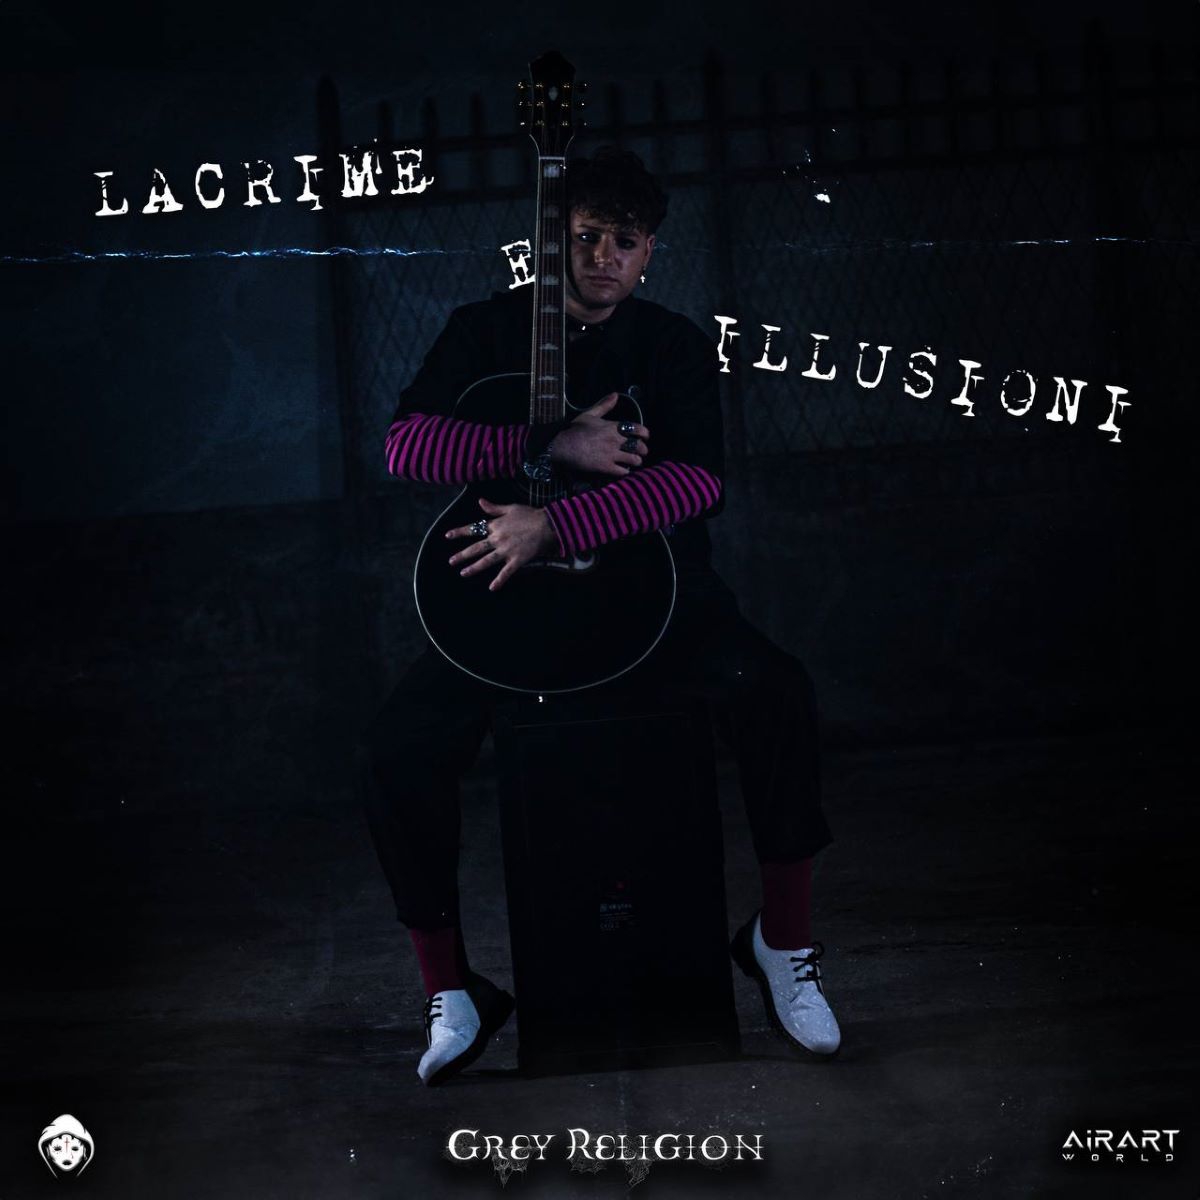 Grey Religion - “Lacrime e illusioni”